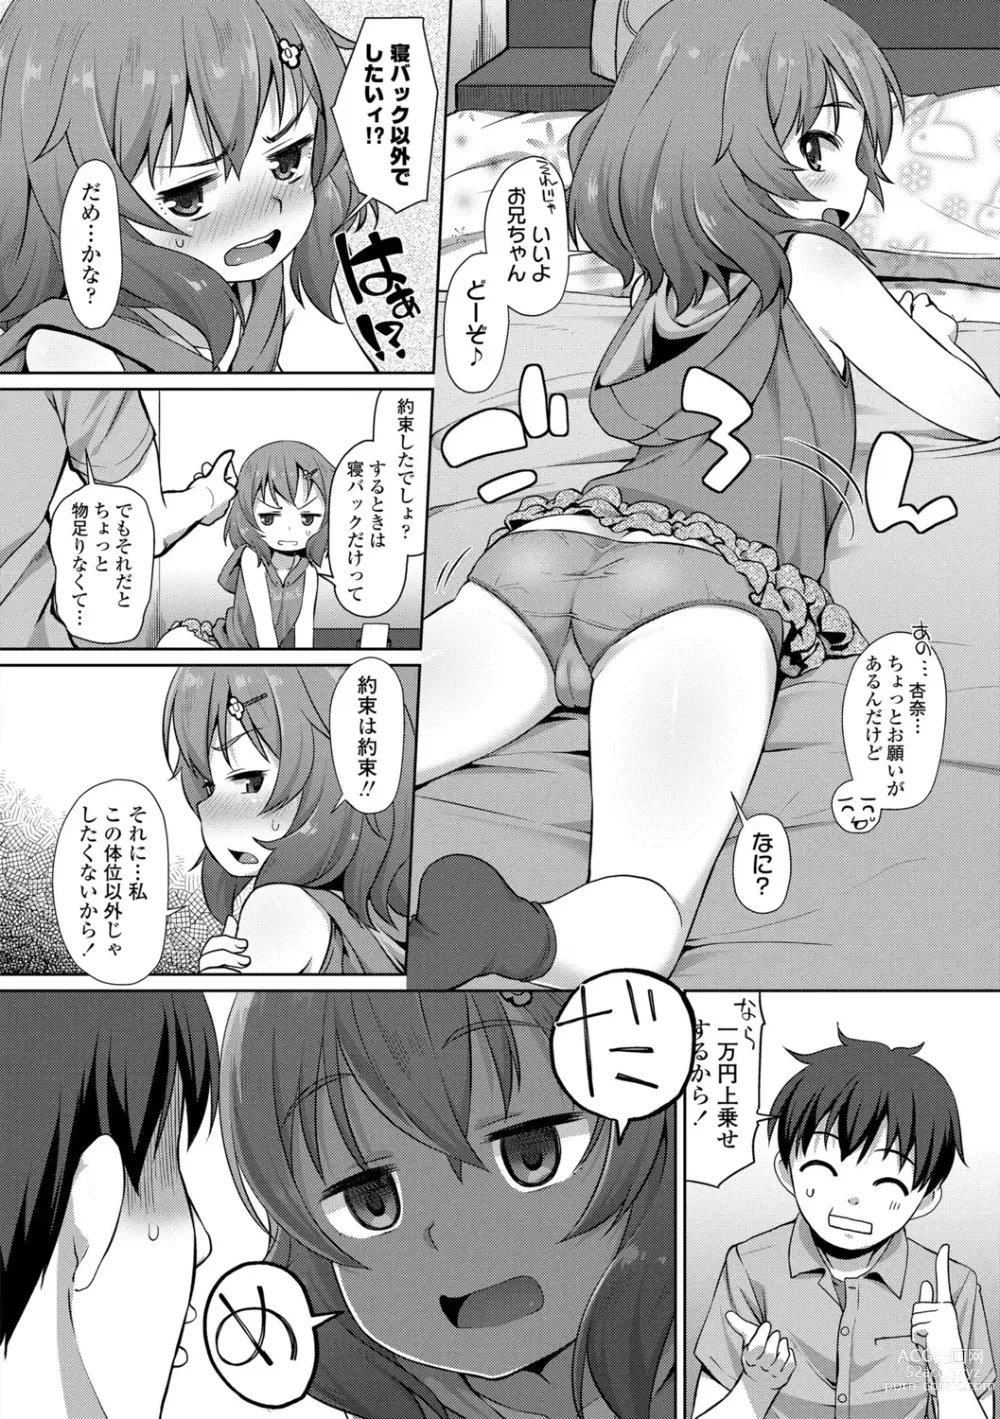 Page 8 of manga Chiisai Ana wa Dou desu ka?